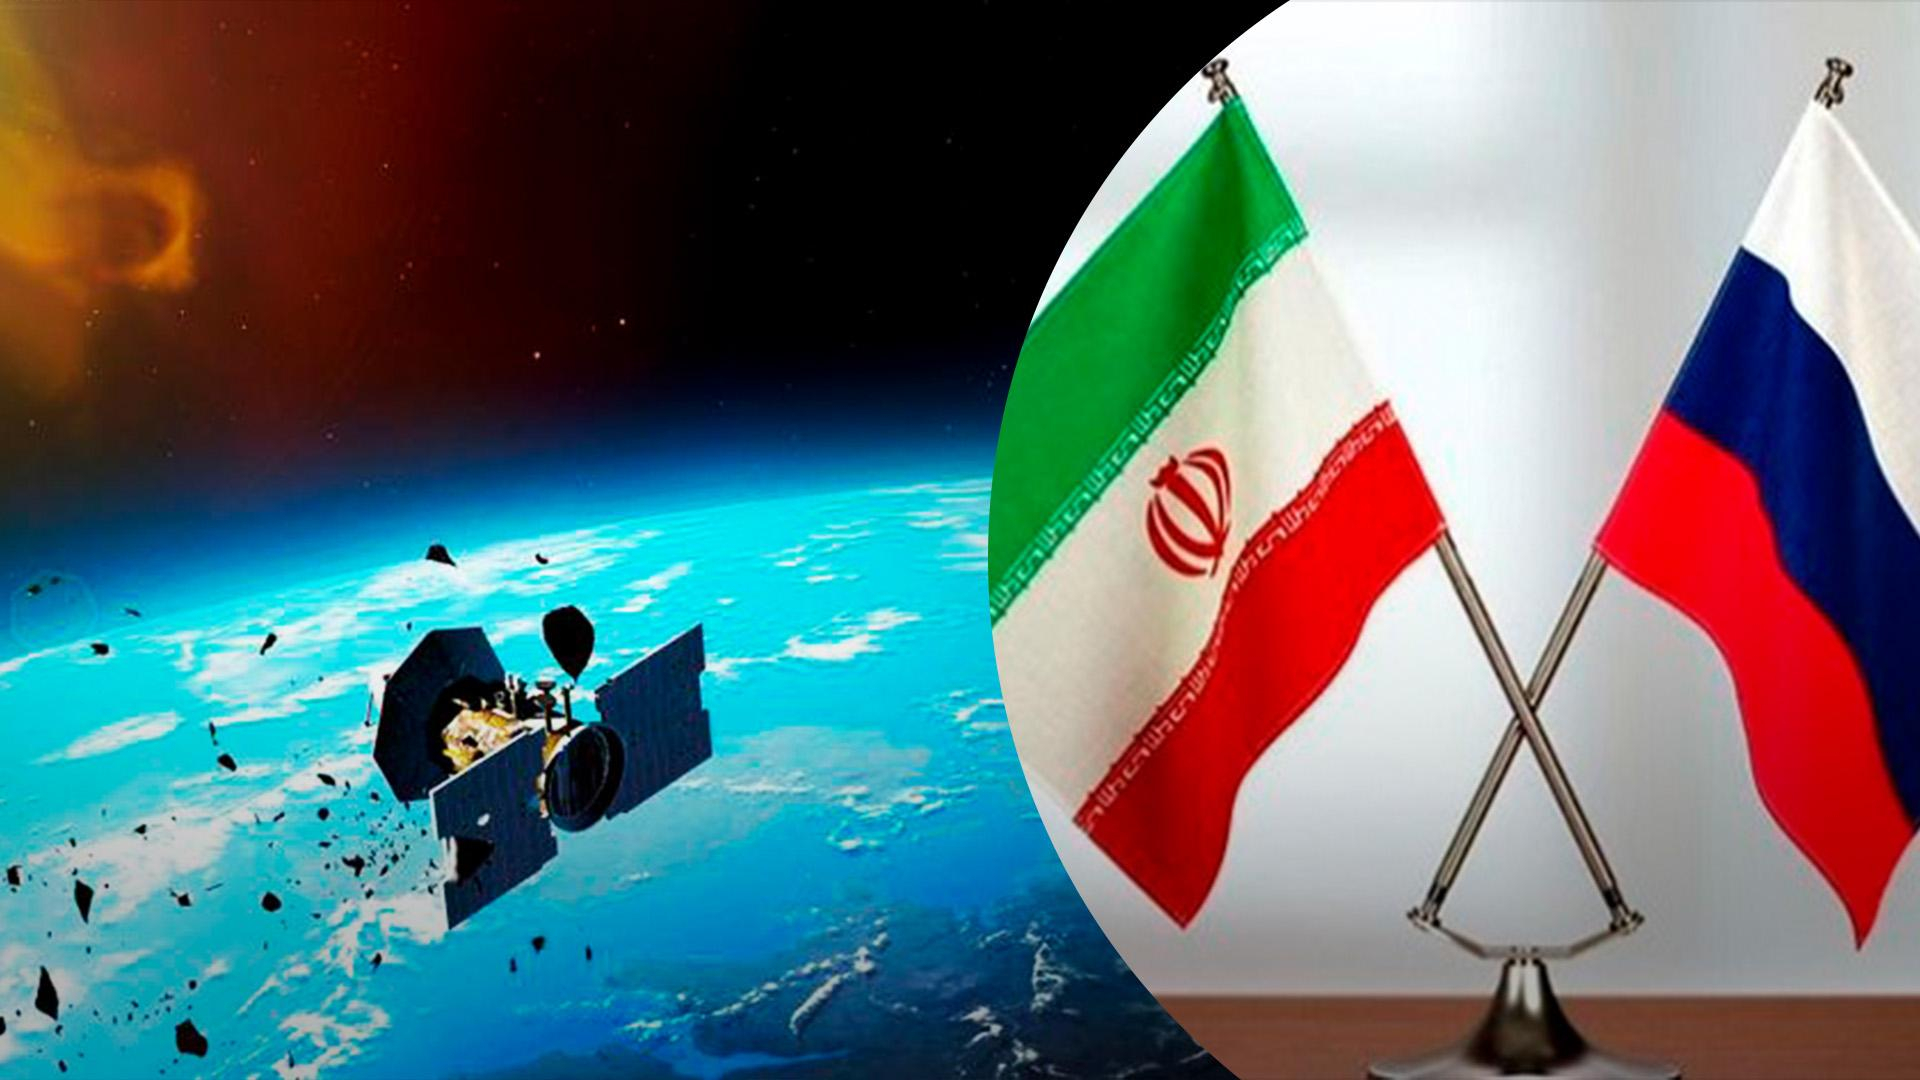 Иран не будет предоставлять своего спутника россии для шпионажа по Украине - официальное заявление